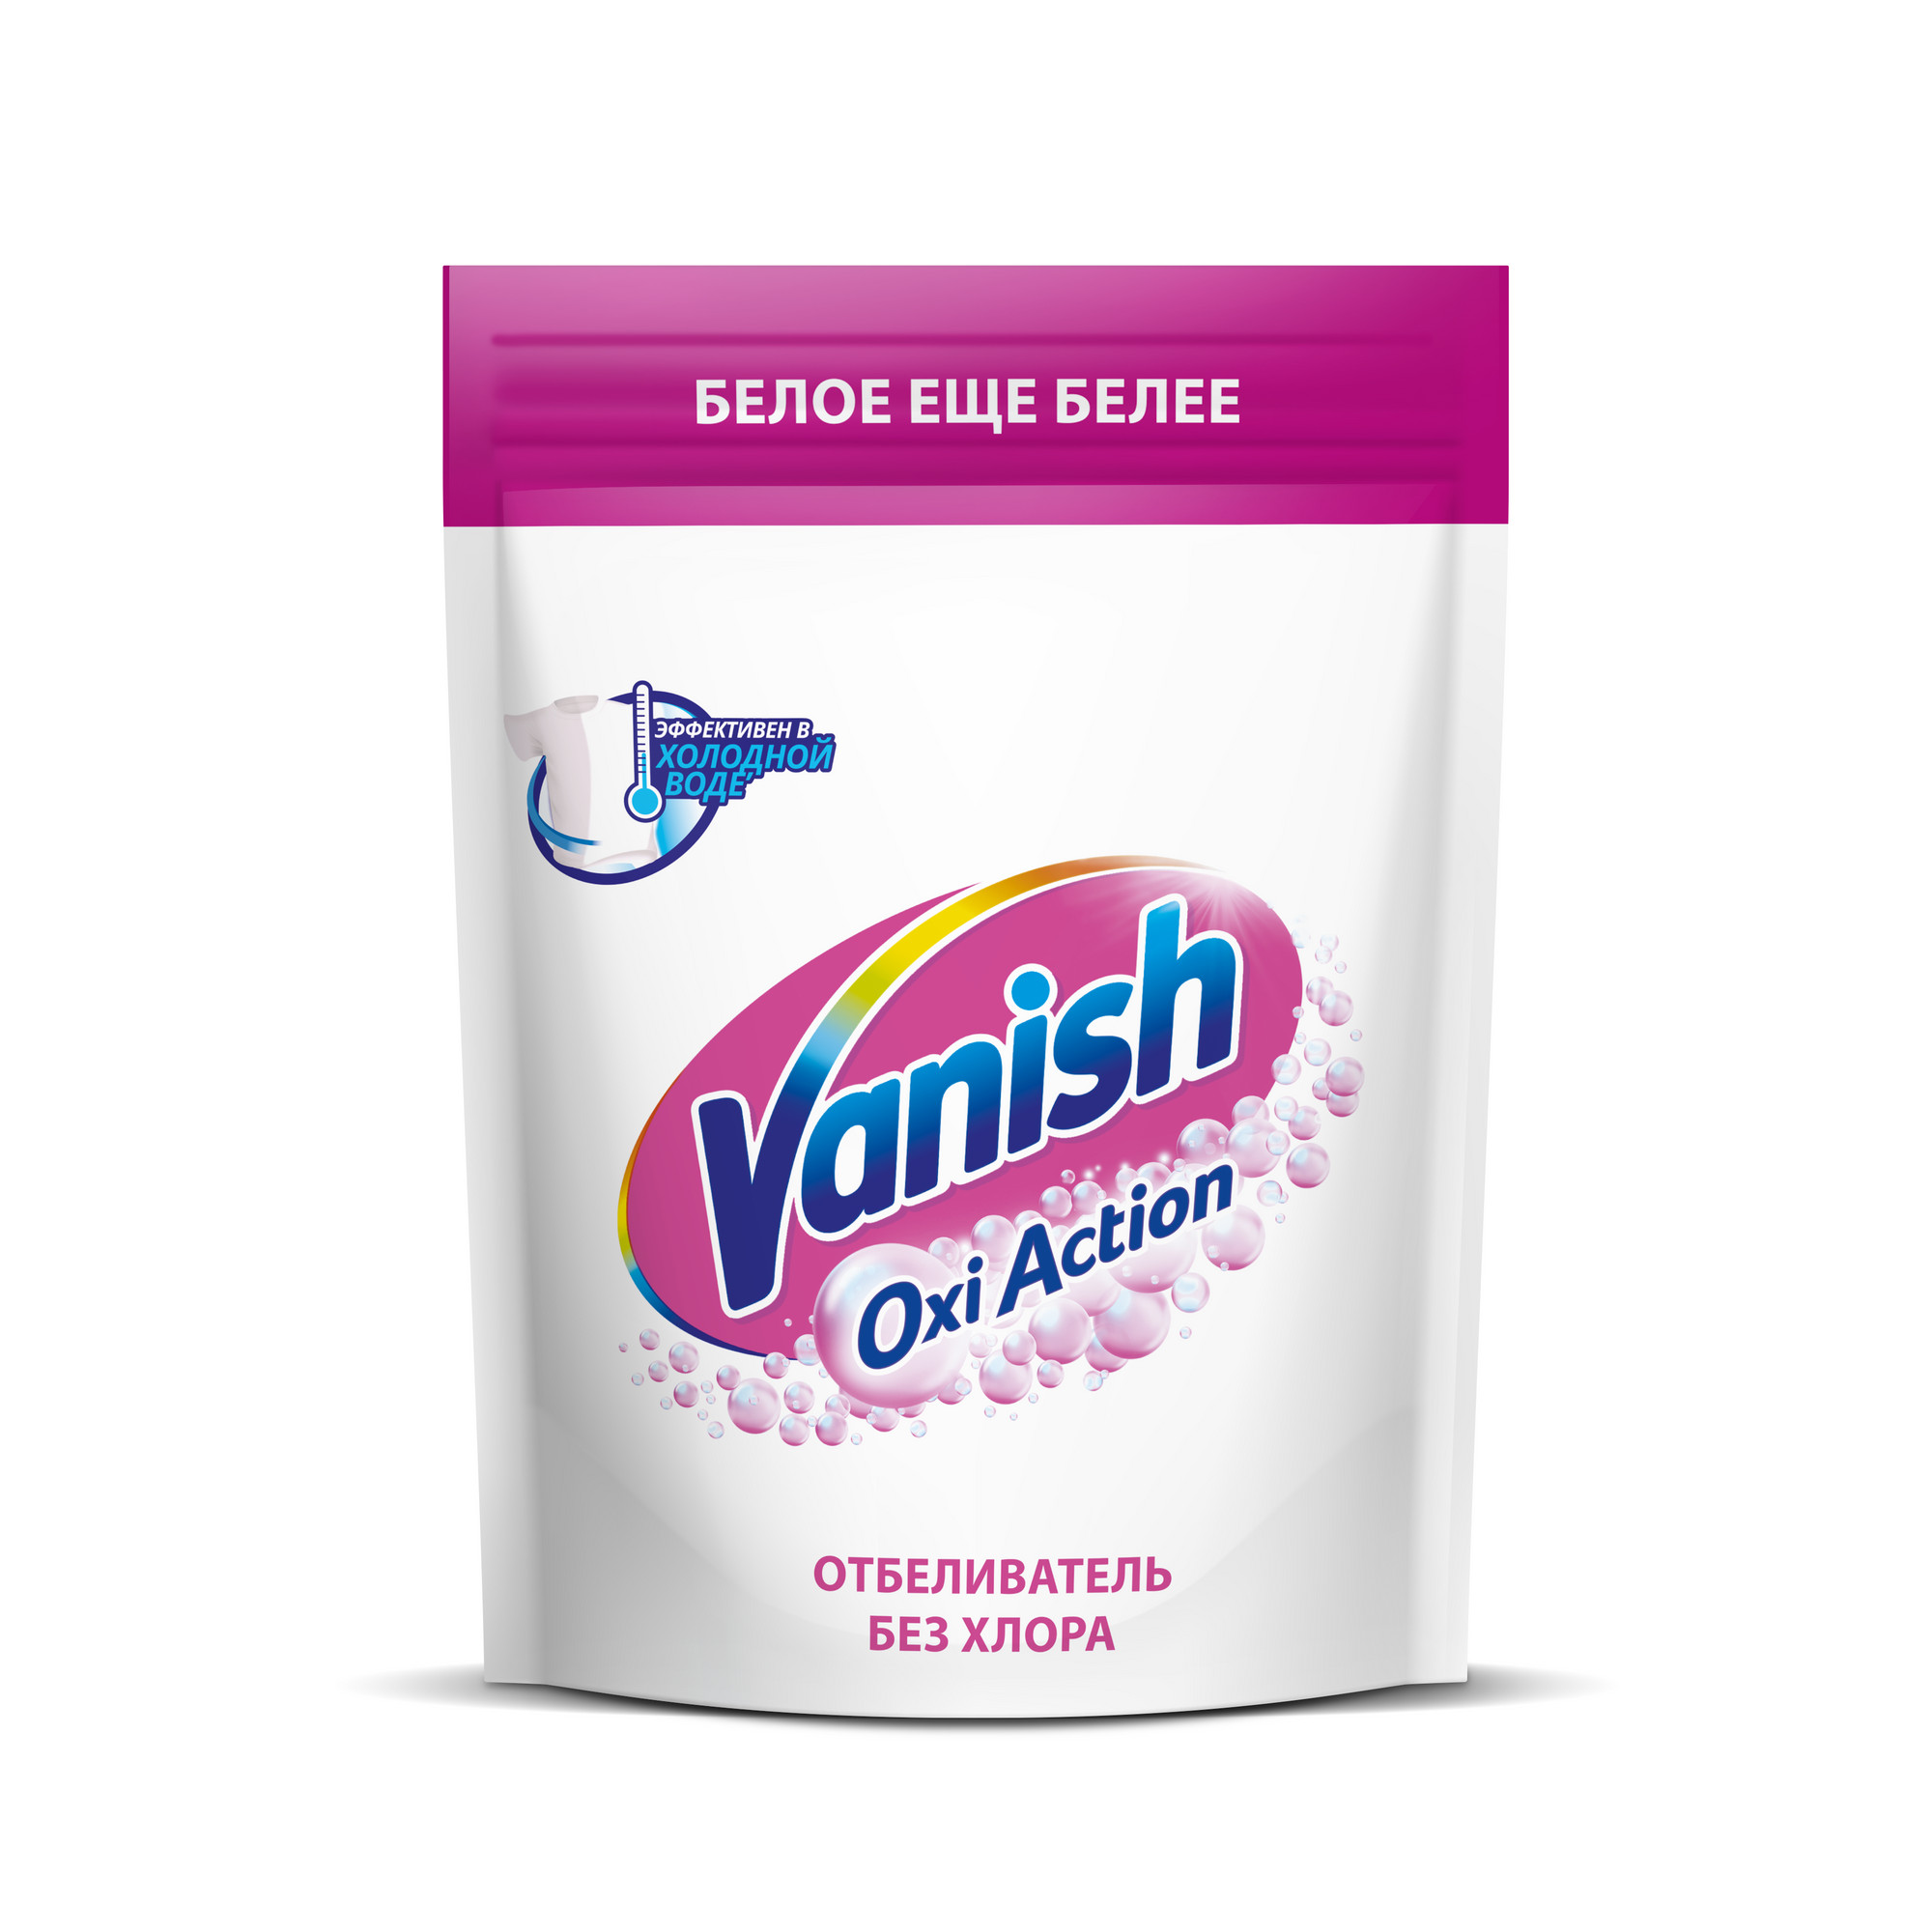 Пятновыводитель Vanish Oxi Action Кристальная белизна для тканей порошкообразный 500 г пятновыводитель vanish oxi action кристальная белизна с отбеливателем 3 л